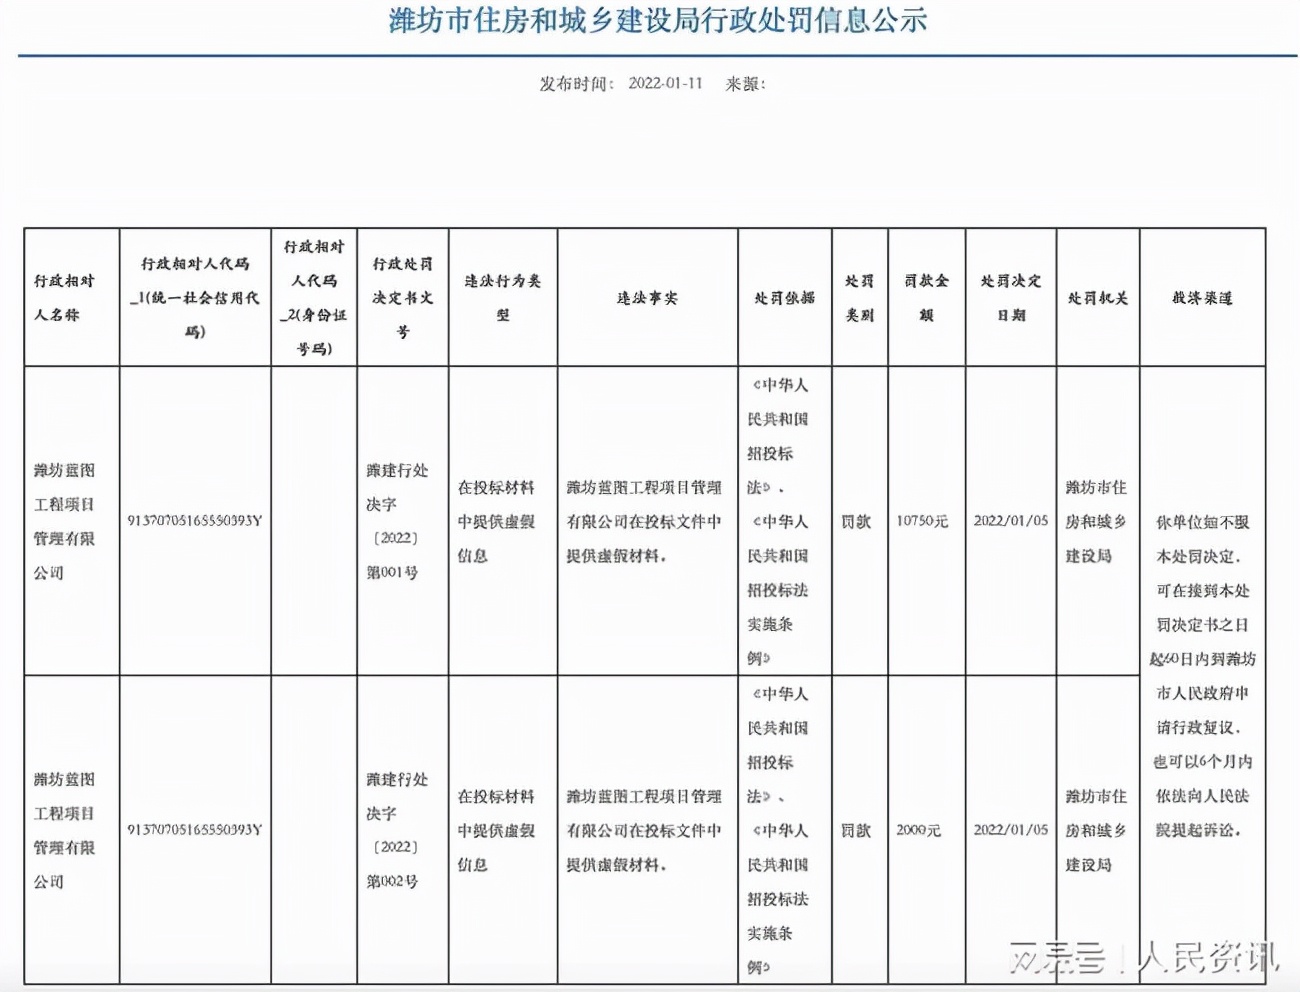 潍坊蓝图工程项目管理有限公司因提供虚假投标材料 连收两张罚单